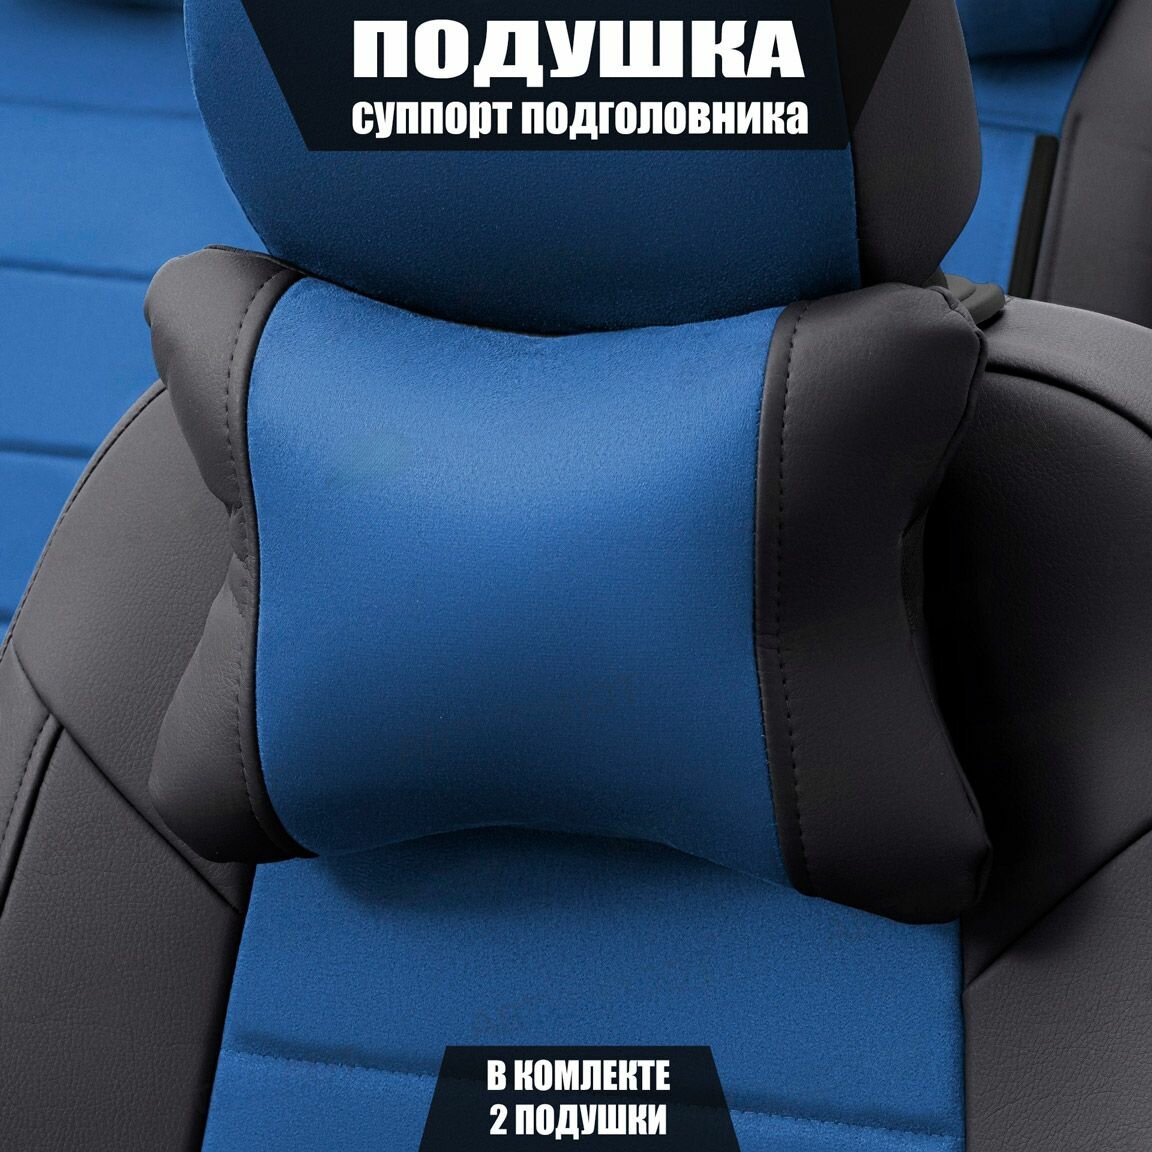 Подушки под шею (суппорт подголовника) для БМВ 5 серии (2009 - 2013) седан / BMW 5-series, Алькантара, 2 подушки, Черный и синий